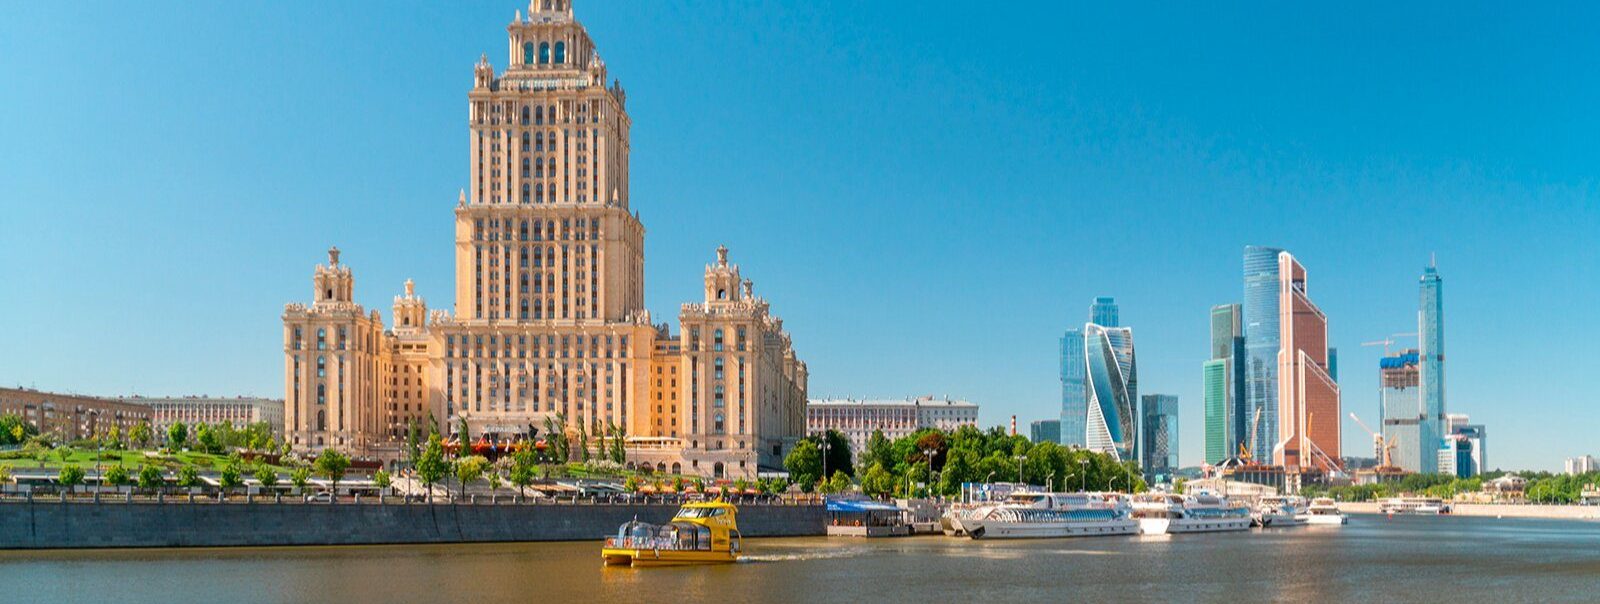 Москвичи смогут совершить прогулку по речному маршруту №11. Фото: сайт мэра Москвы